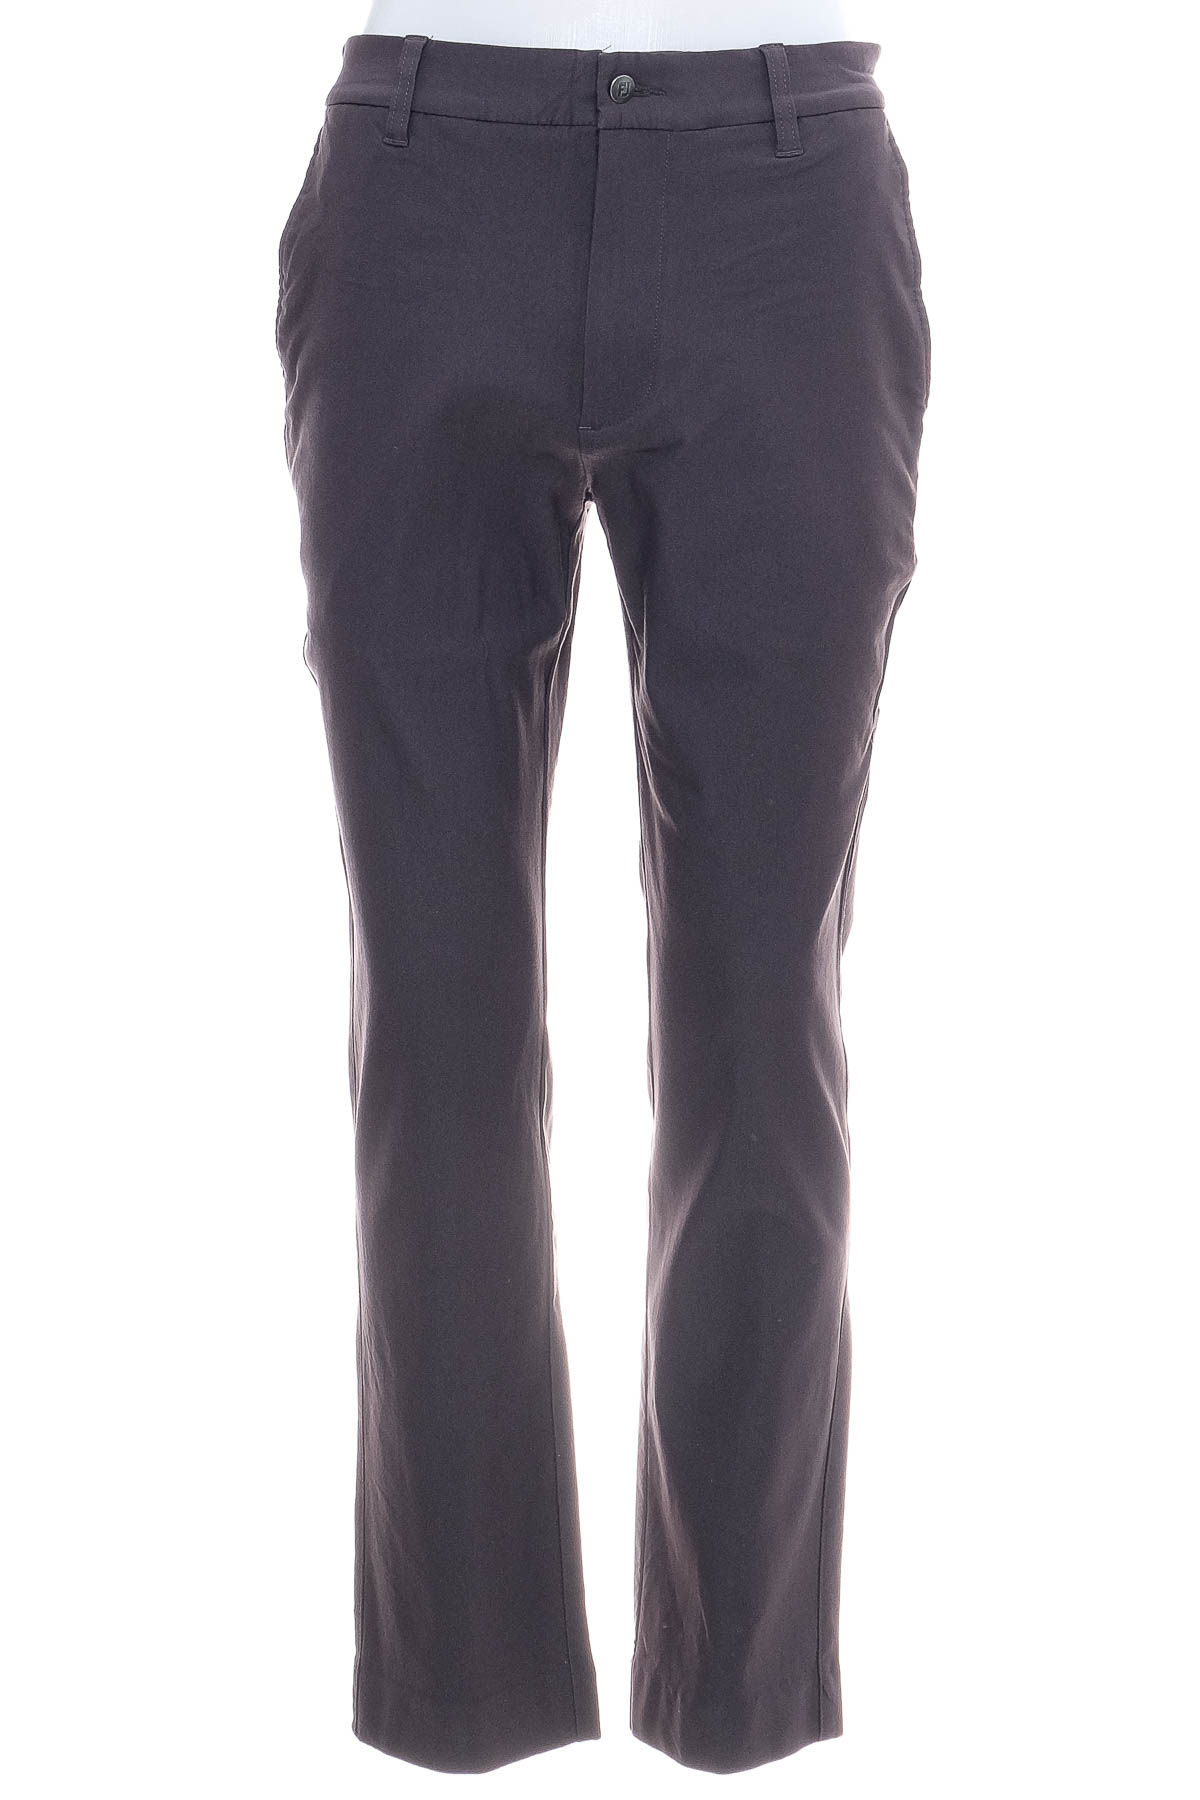 Men's trousers - FJ - 1